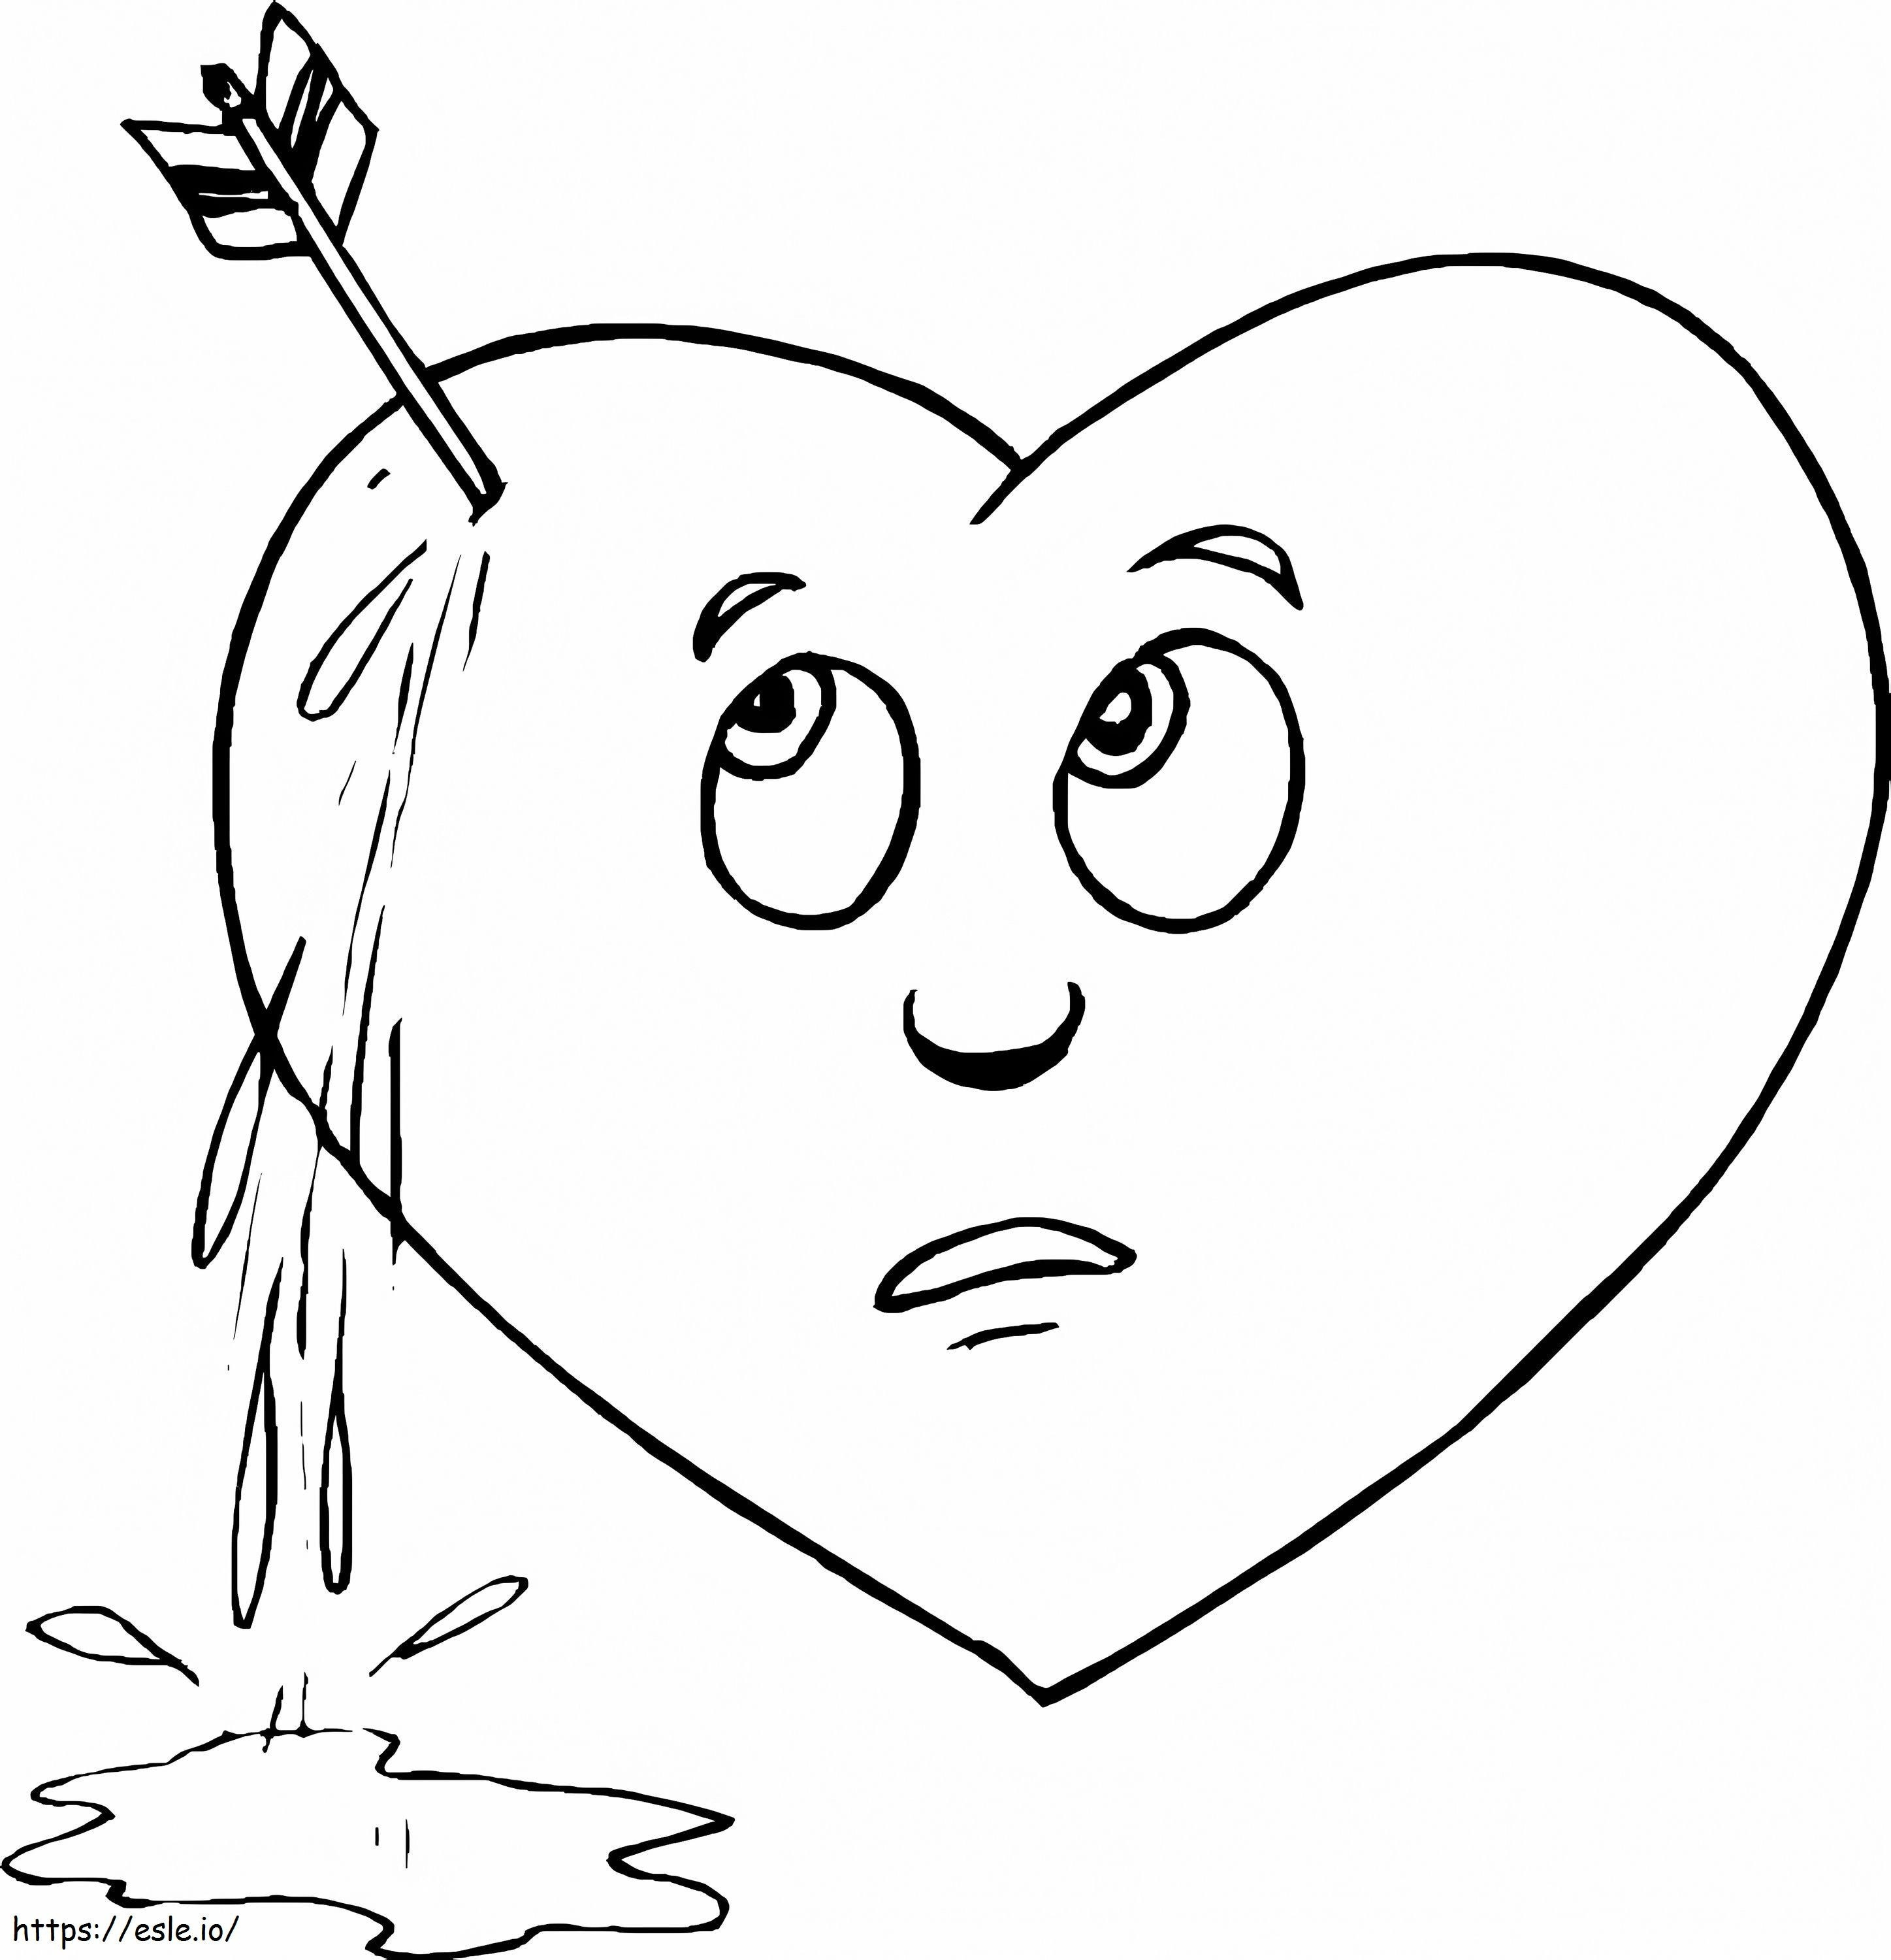 Coloriage Coeur avec flèche à imprimer dessin